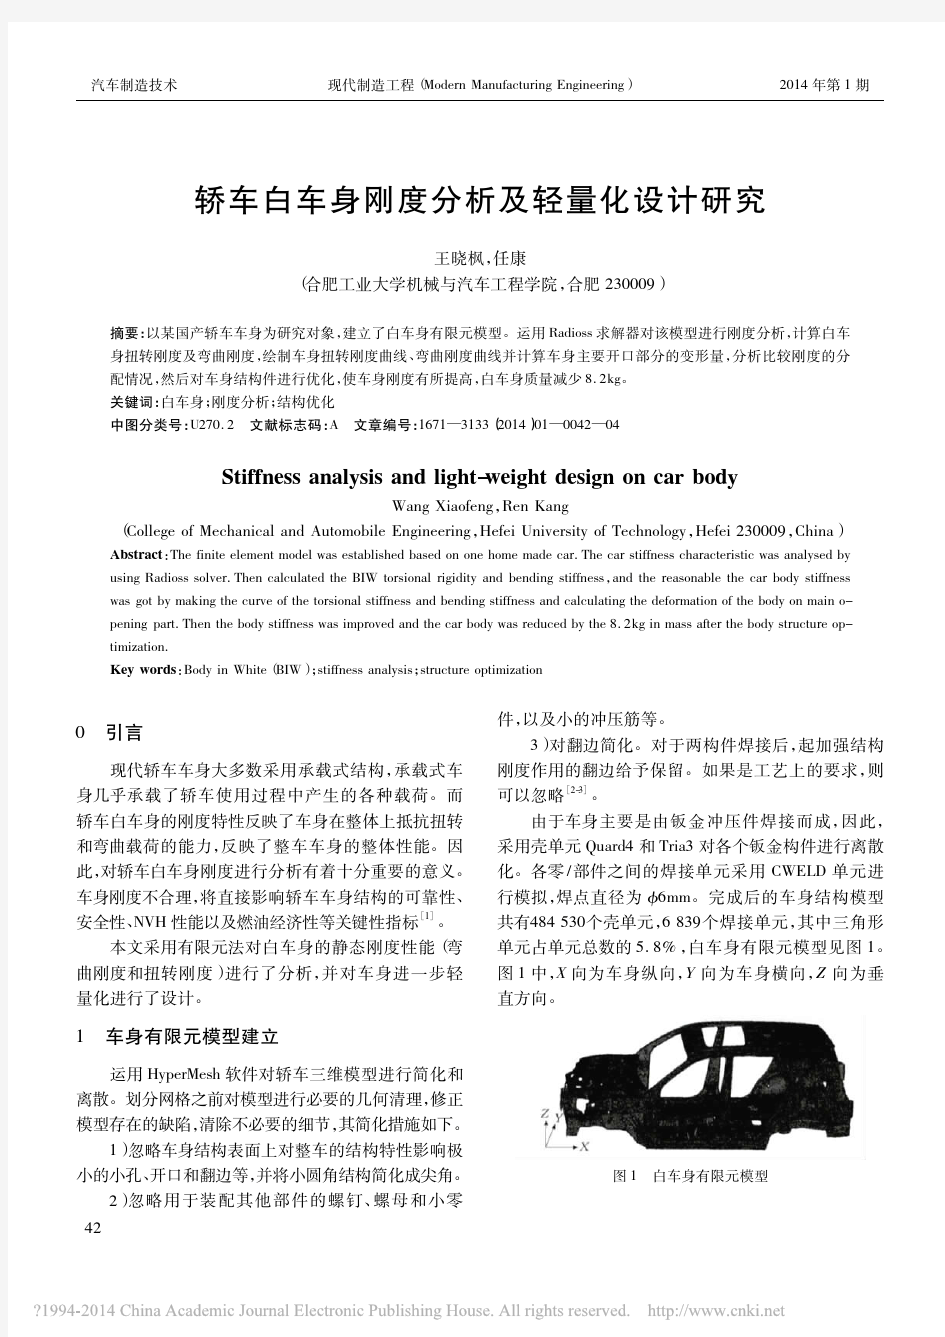 轿车白车身刚度分析及轻量化设计研究_王晓枫